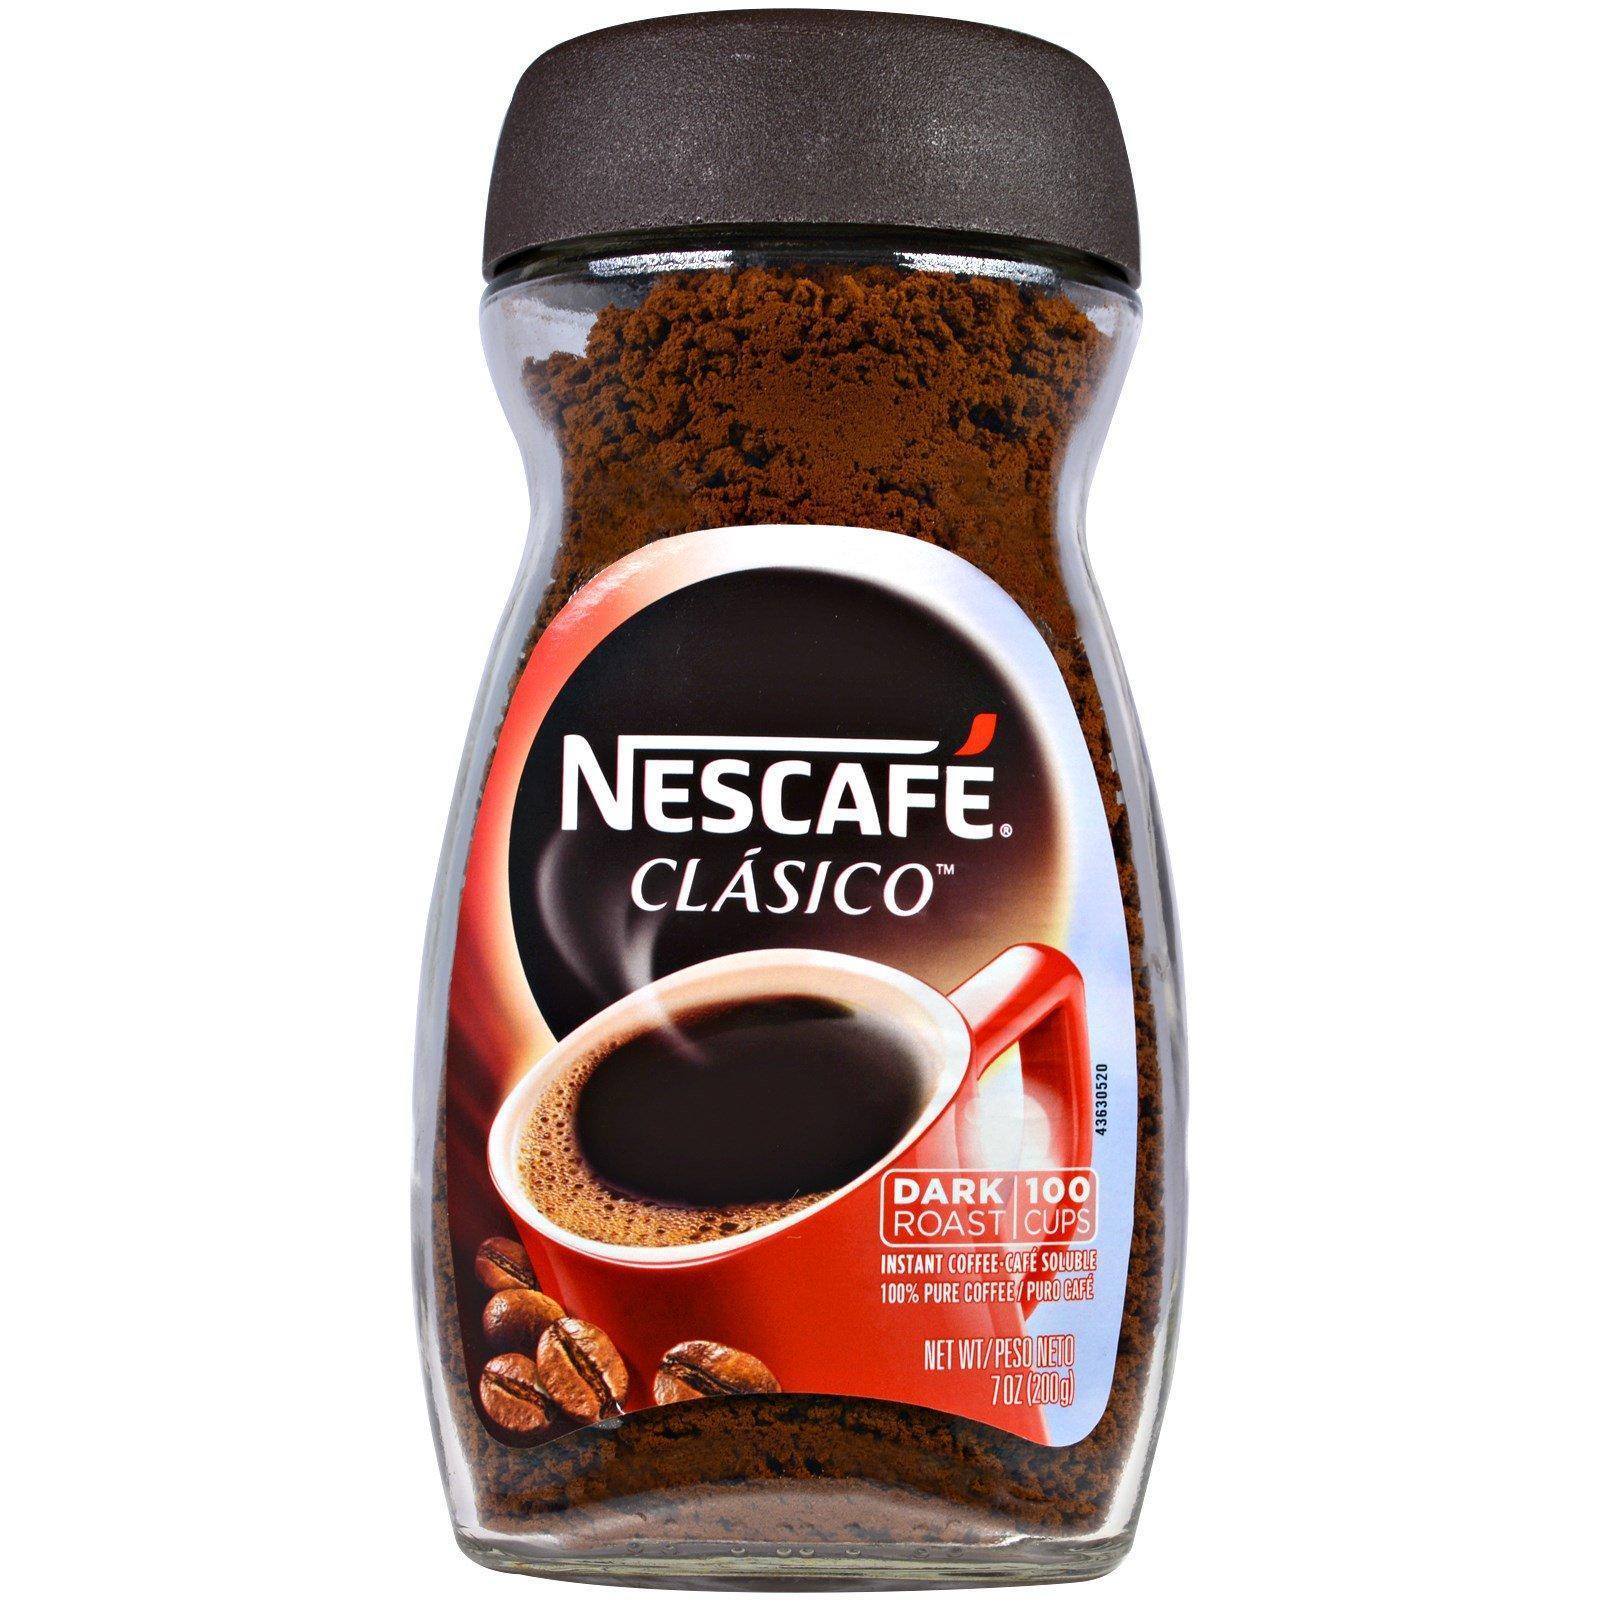 Conoce la Máquina Café Soluble - Nescafé® Alegría 8/100